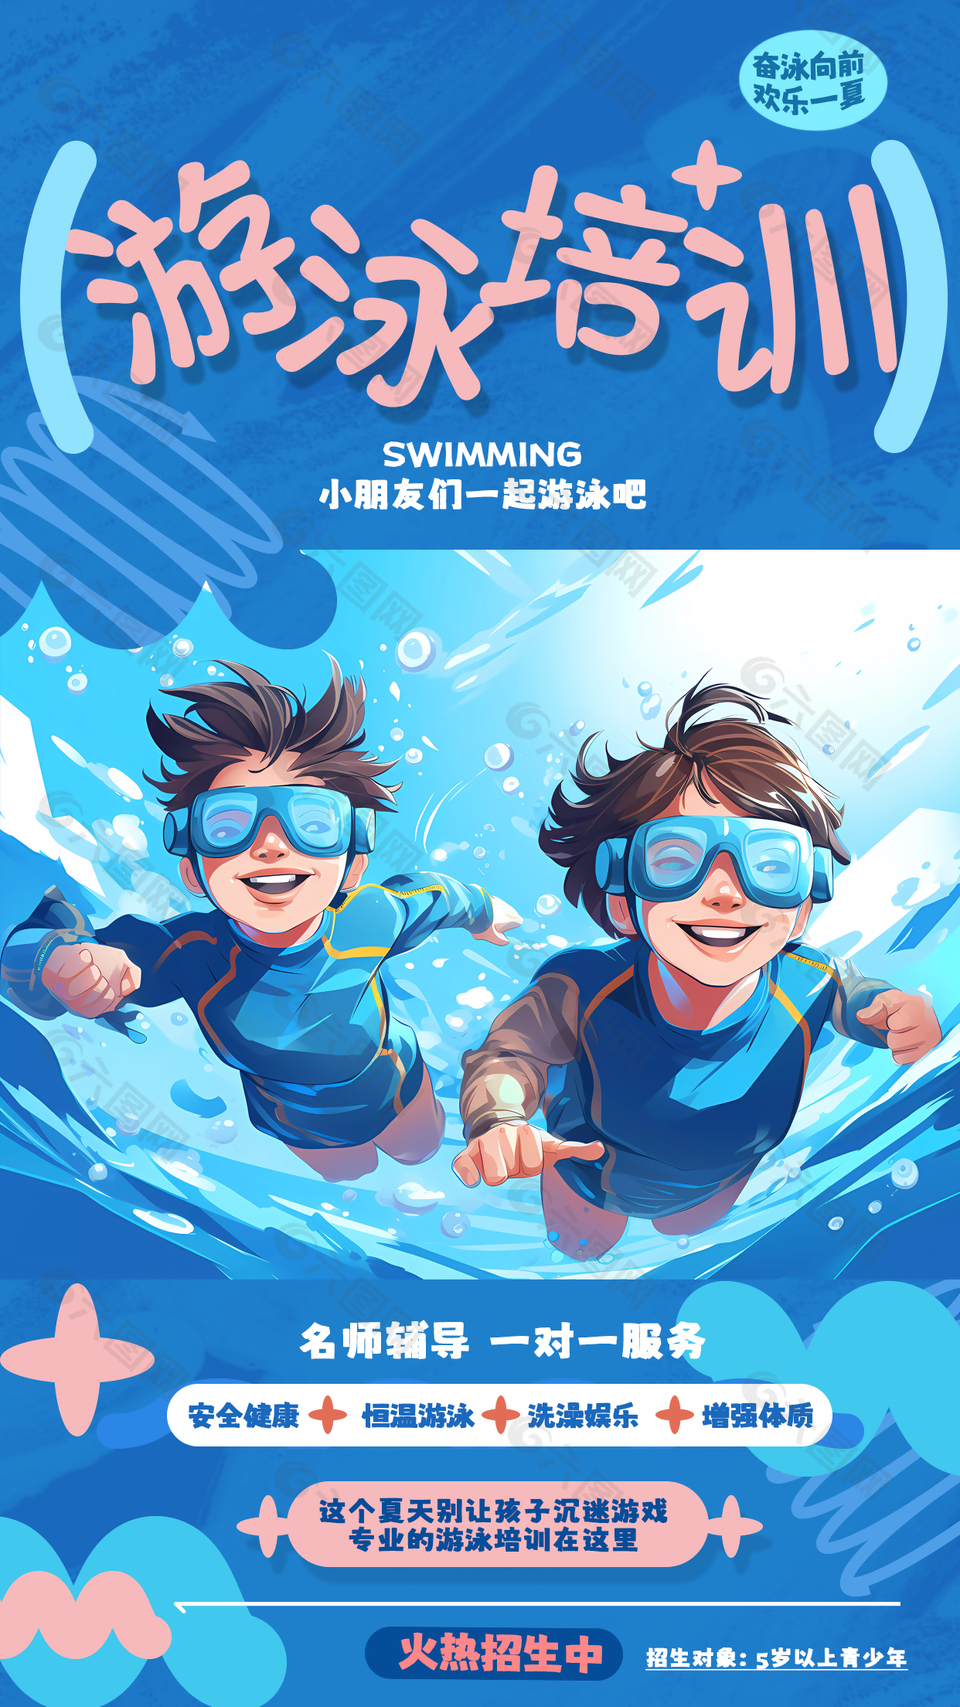 夏季游泳培训火热招生创意插画海报